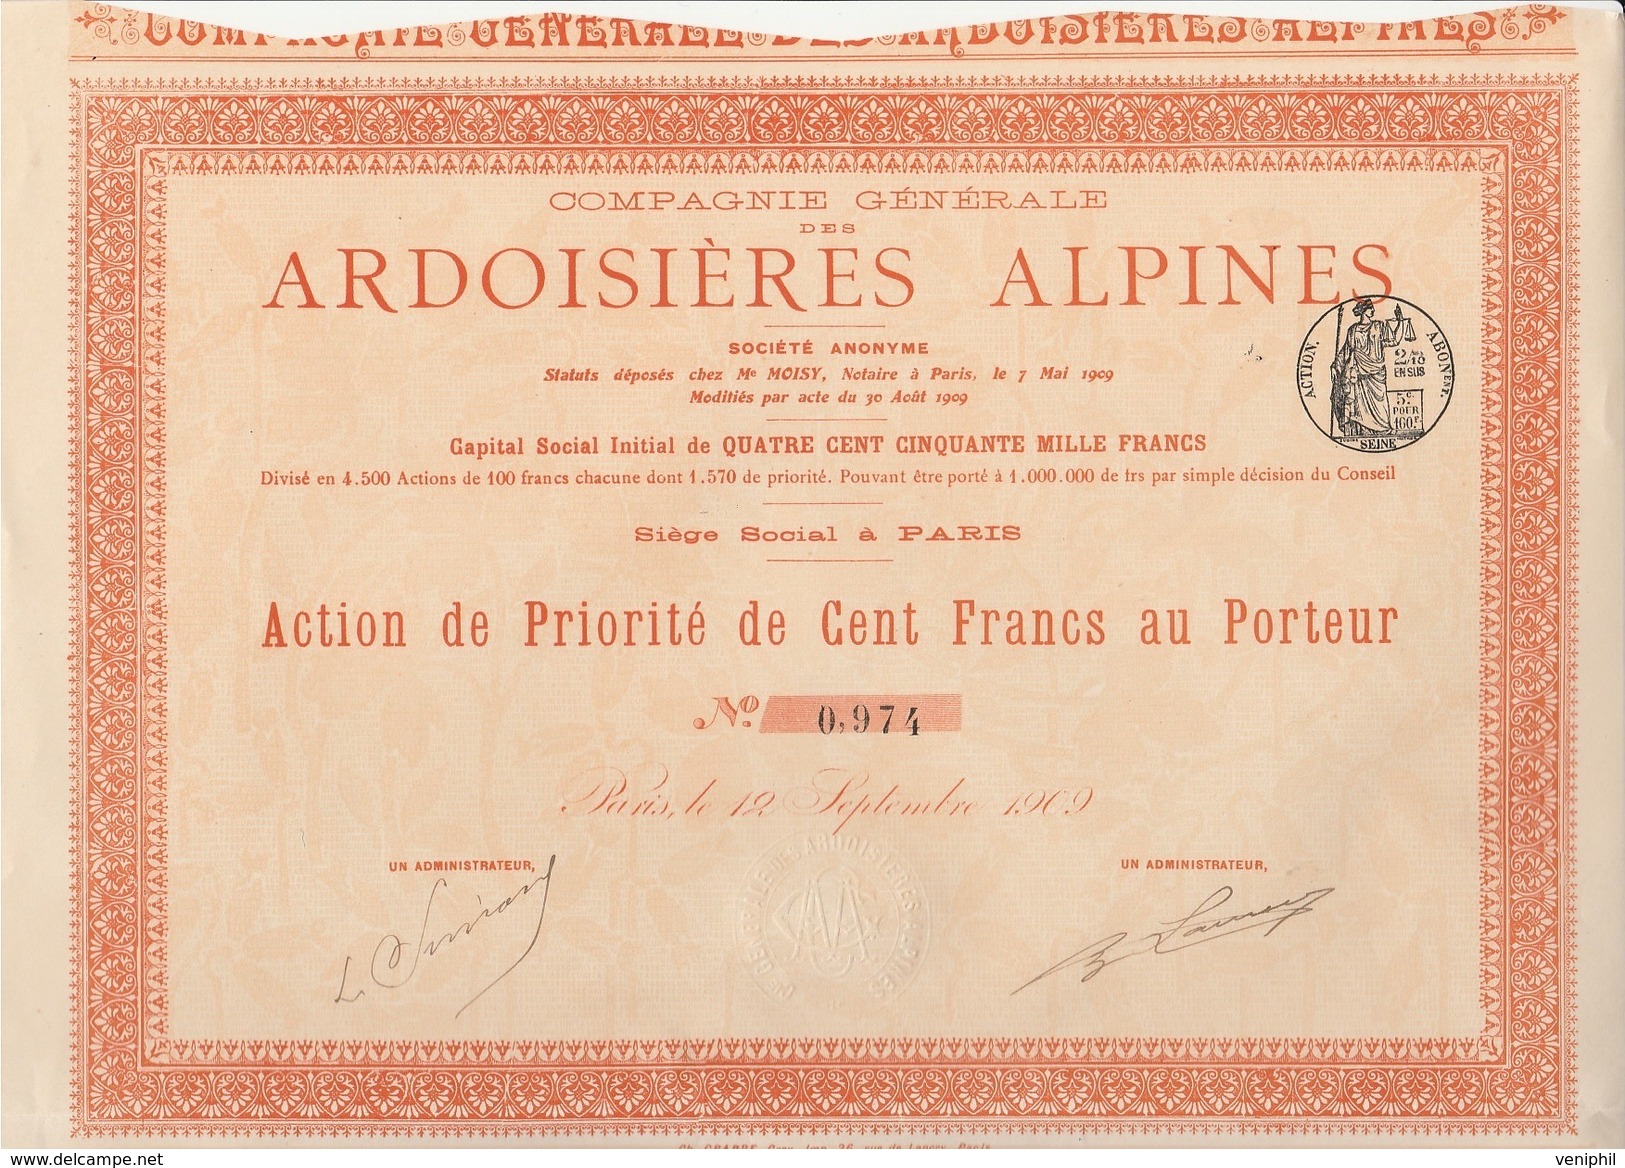 ACTION DE PRIORITE DE CENT FRANCS DIVISE EN 1570 ACTIONS  - ARDOISIERES ALPINES  - ANNEE 1909- - Mineral